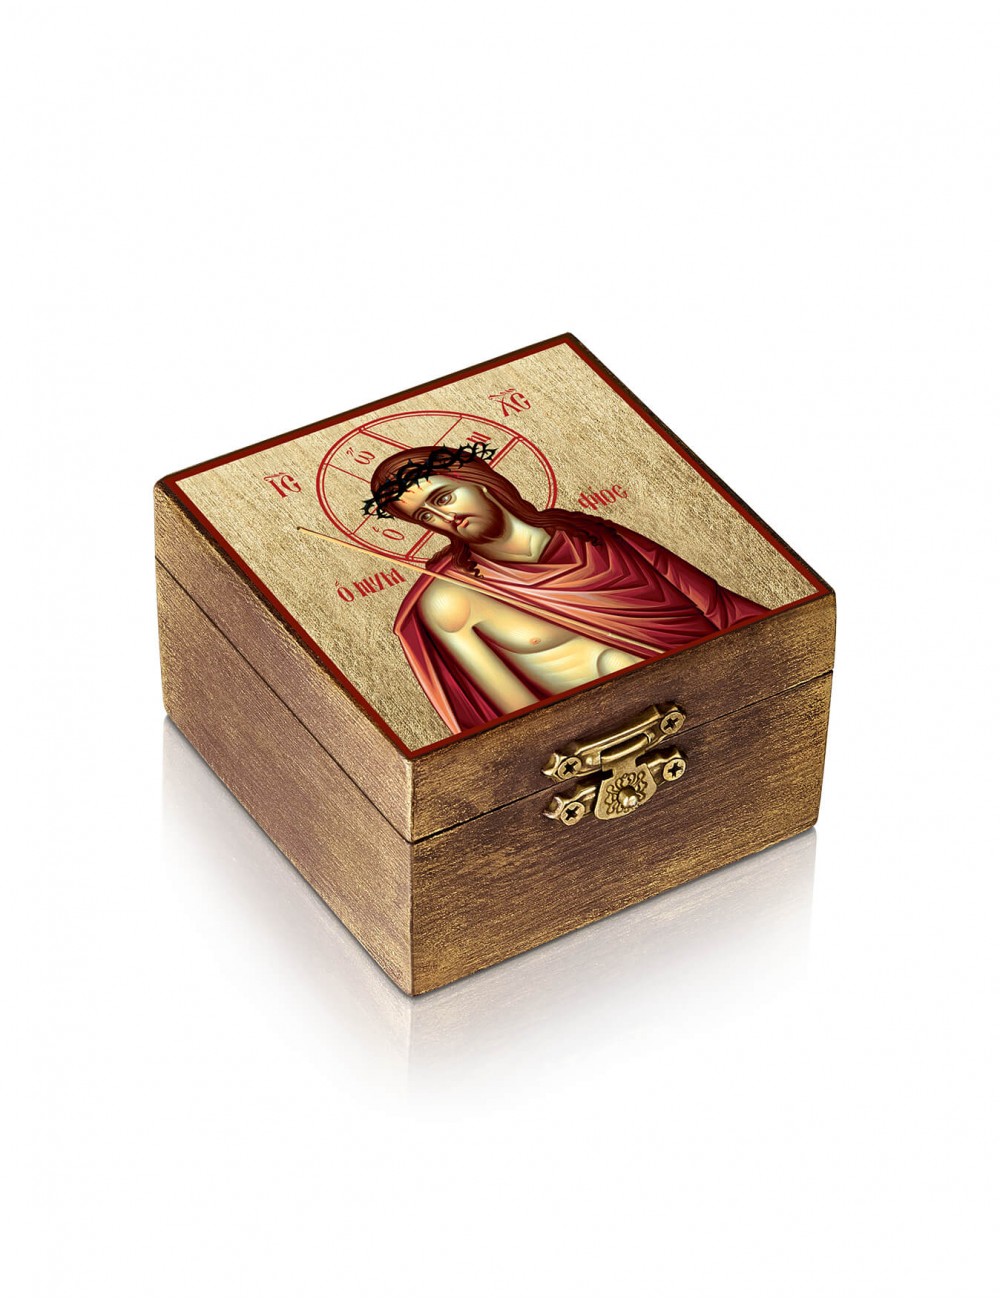 Ξύλινη Λιβανοθήκη - Λειψανοθήκη | Ιησούς Χριστός ο Νυμφίος